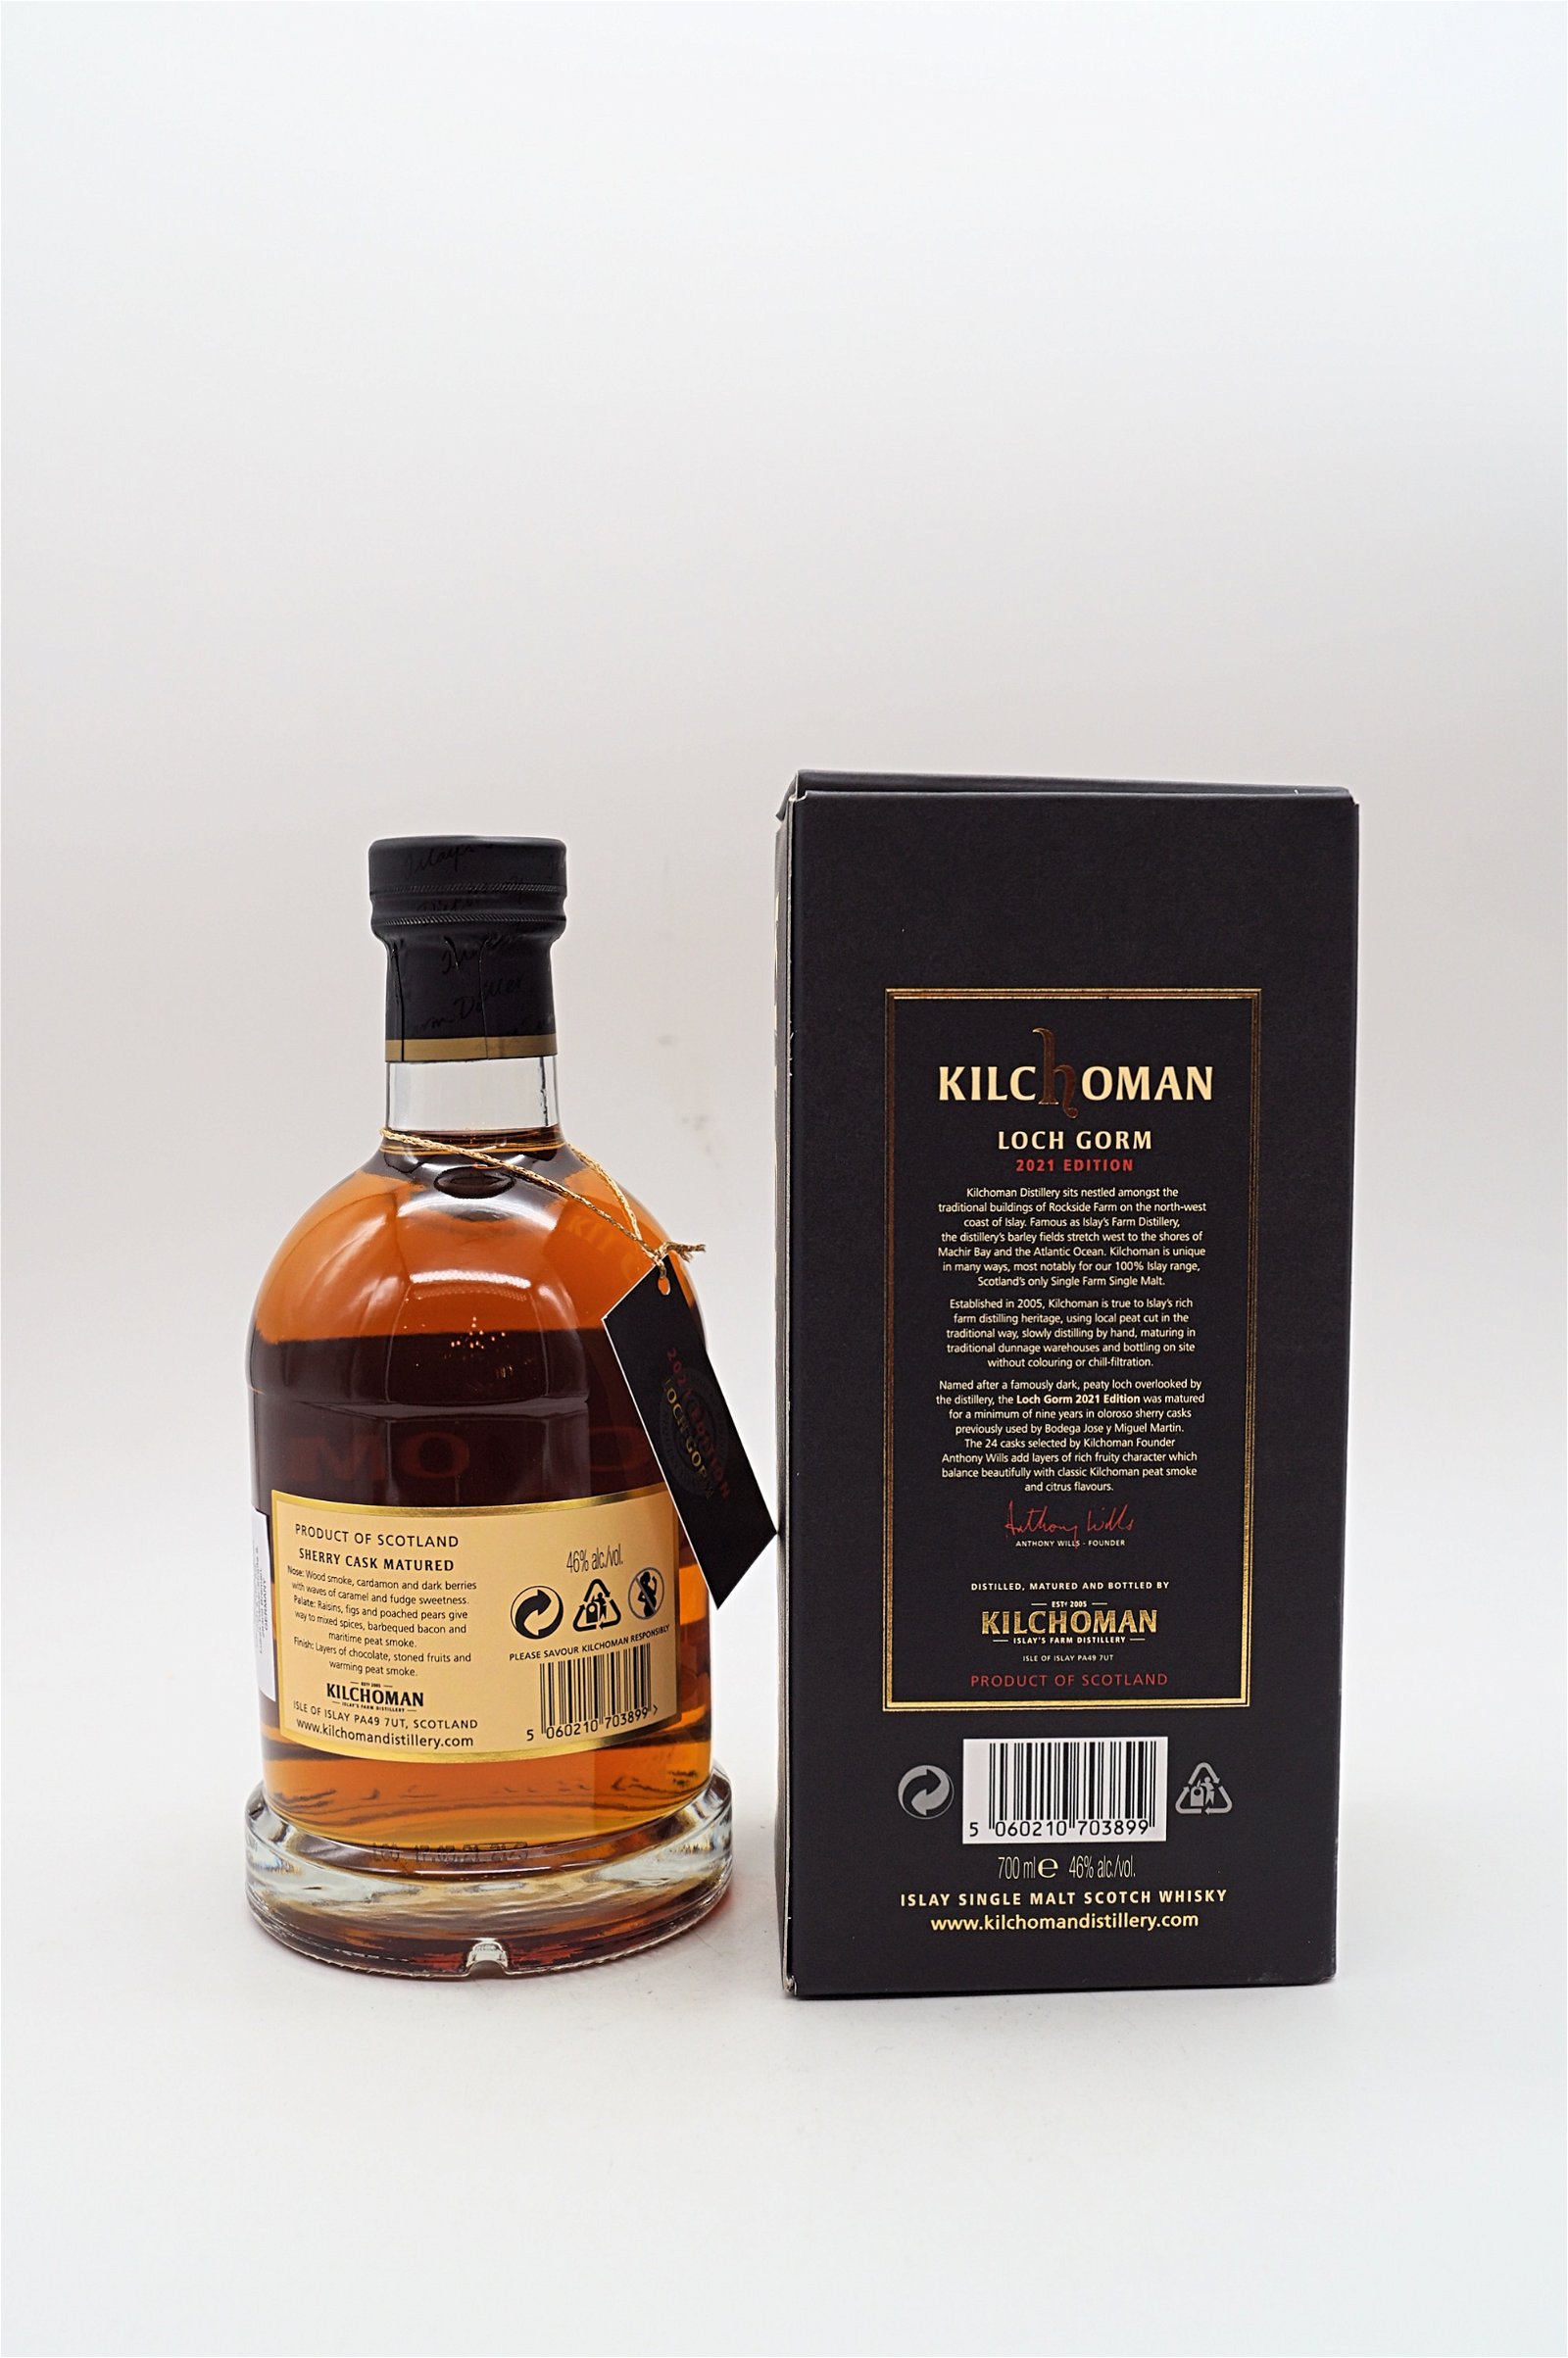 Kilchoman Uniquely Islay Loch Gorm Sherry Cask Edition 2021 Single Malt Scotch